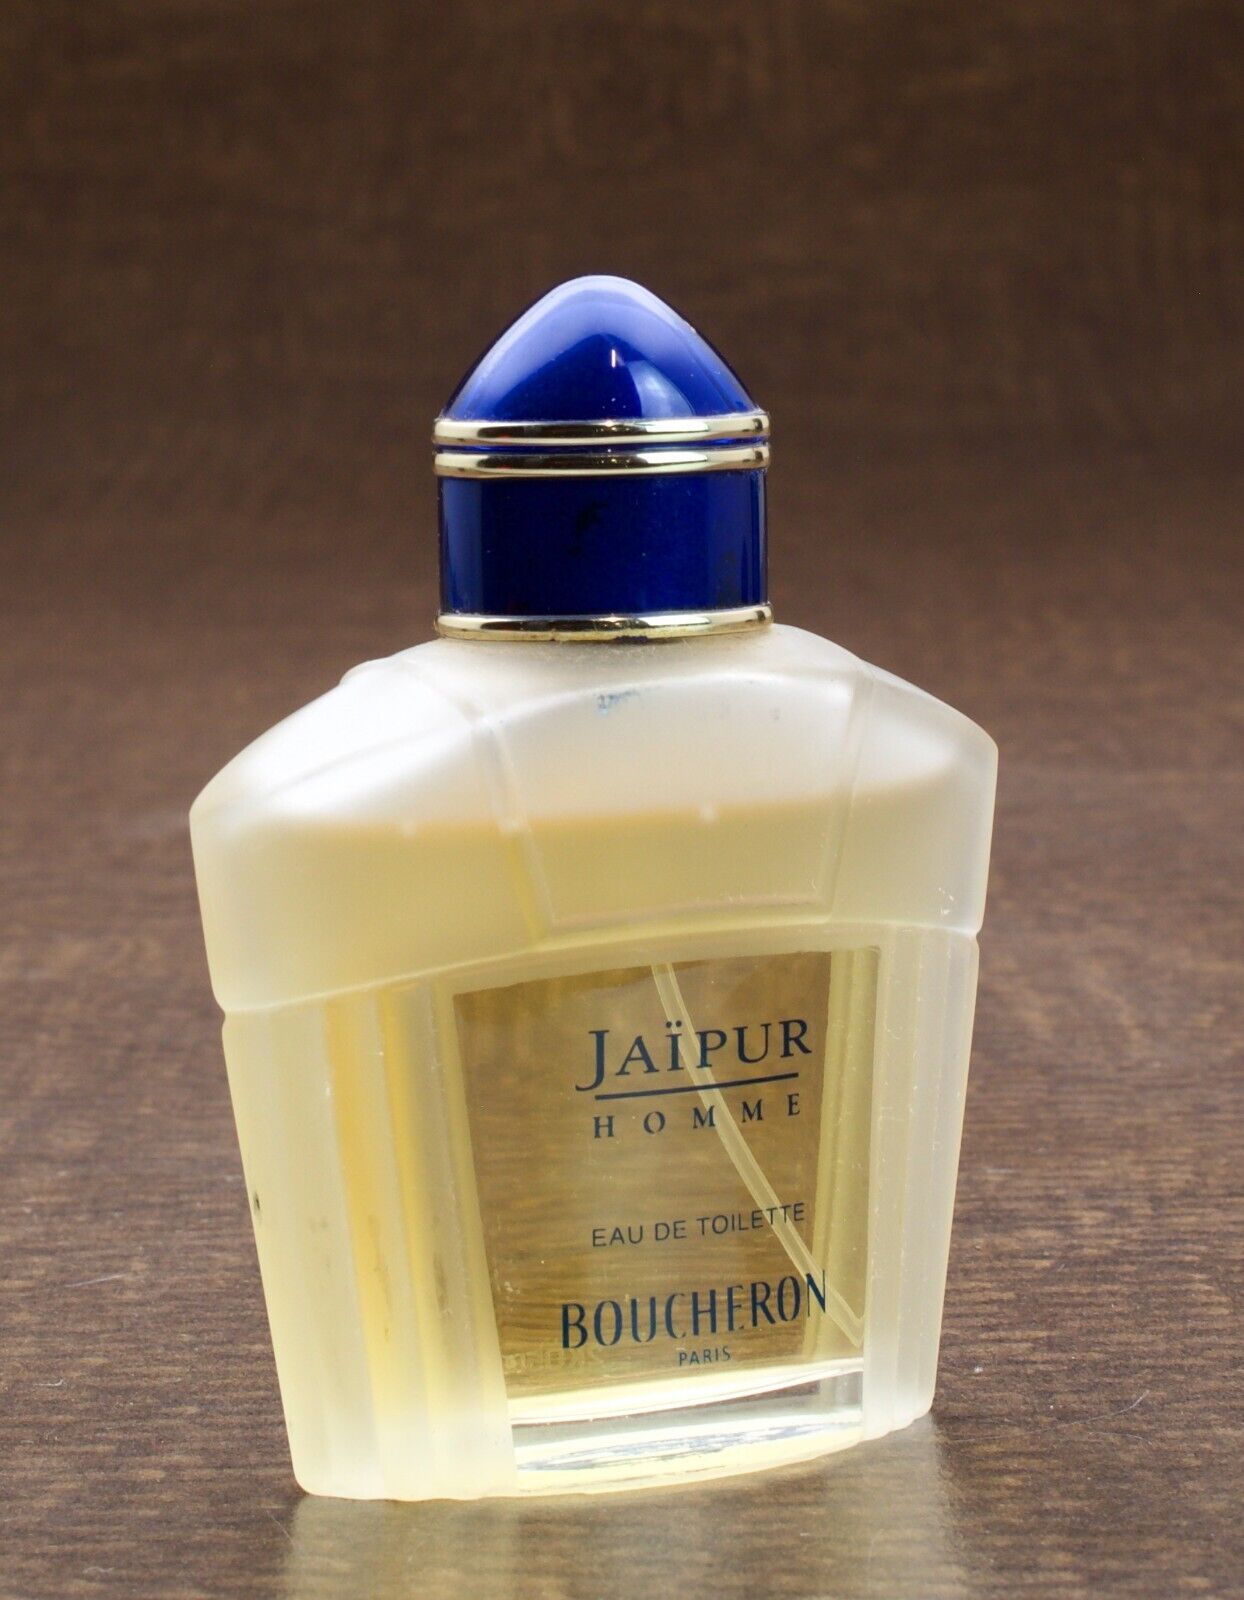 Jaipur Homme Eau De Toilette Boucheron Paris 50ml 1.7 oz 85% Full